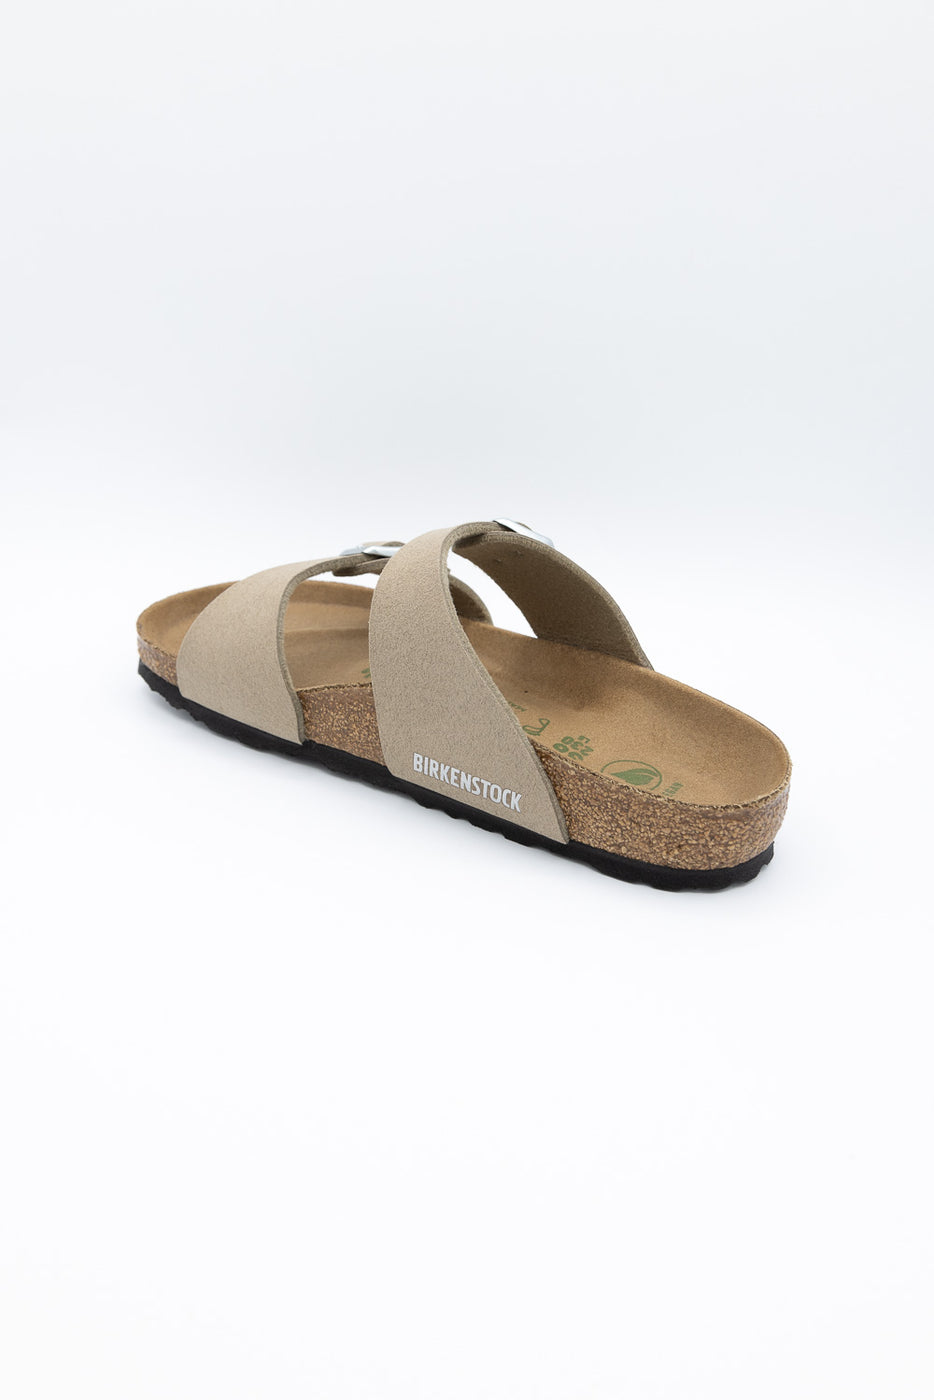 Birkenstock Sydney Birko Sandals for Women in Vegan Grey Taupe 